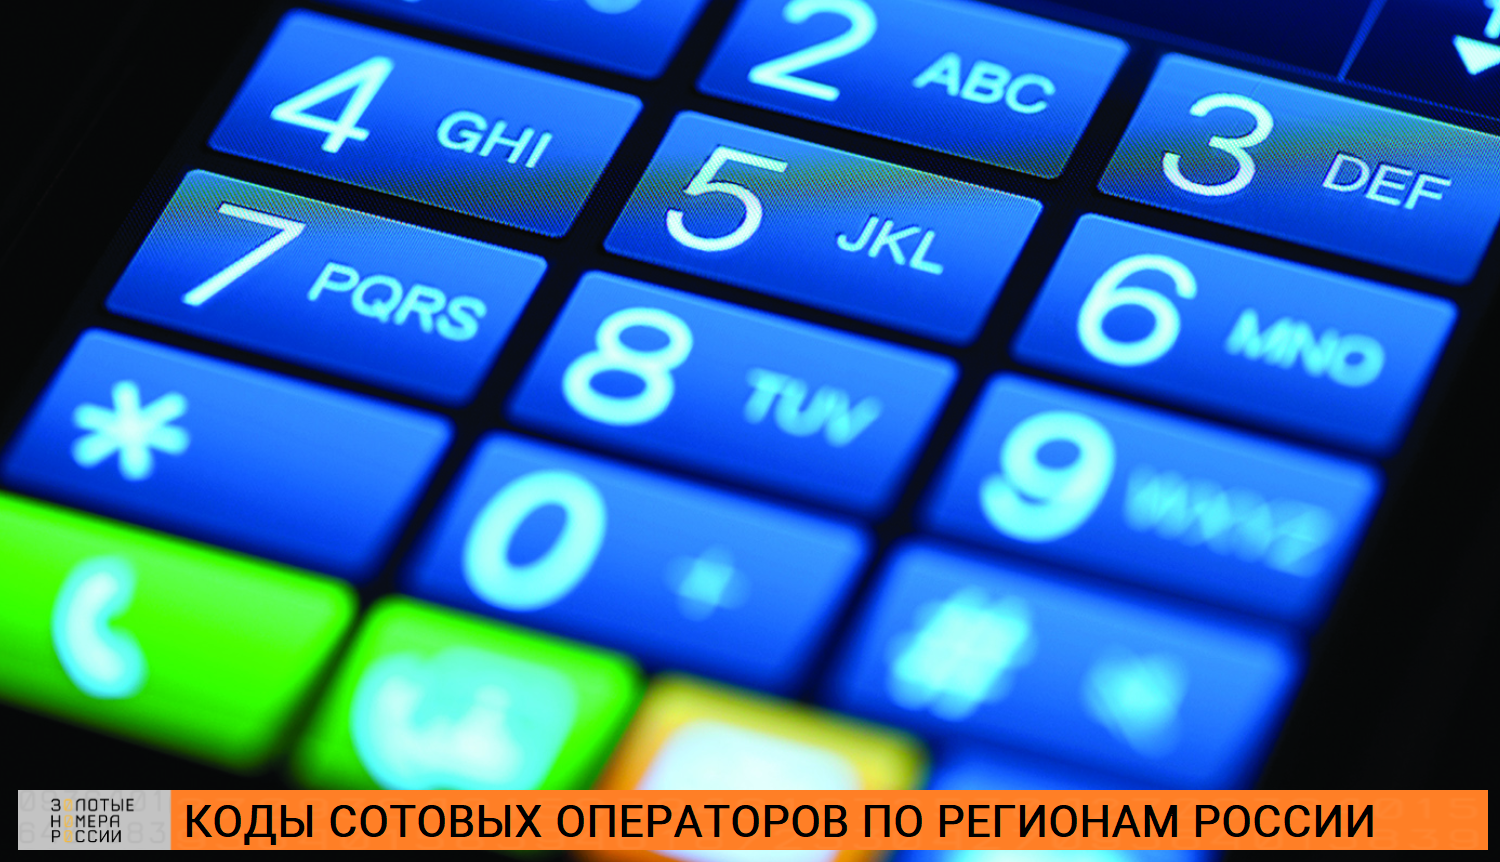 Коды сотовых операторов по регионам России<br>